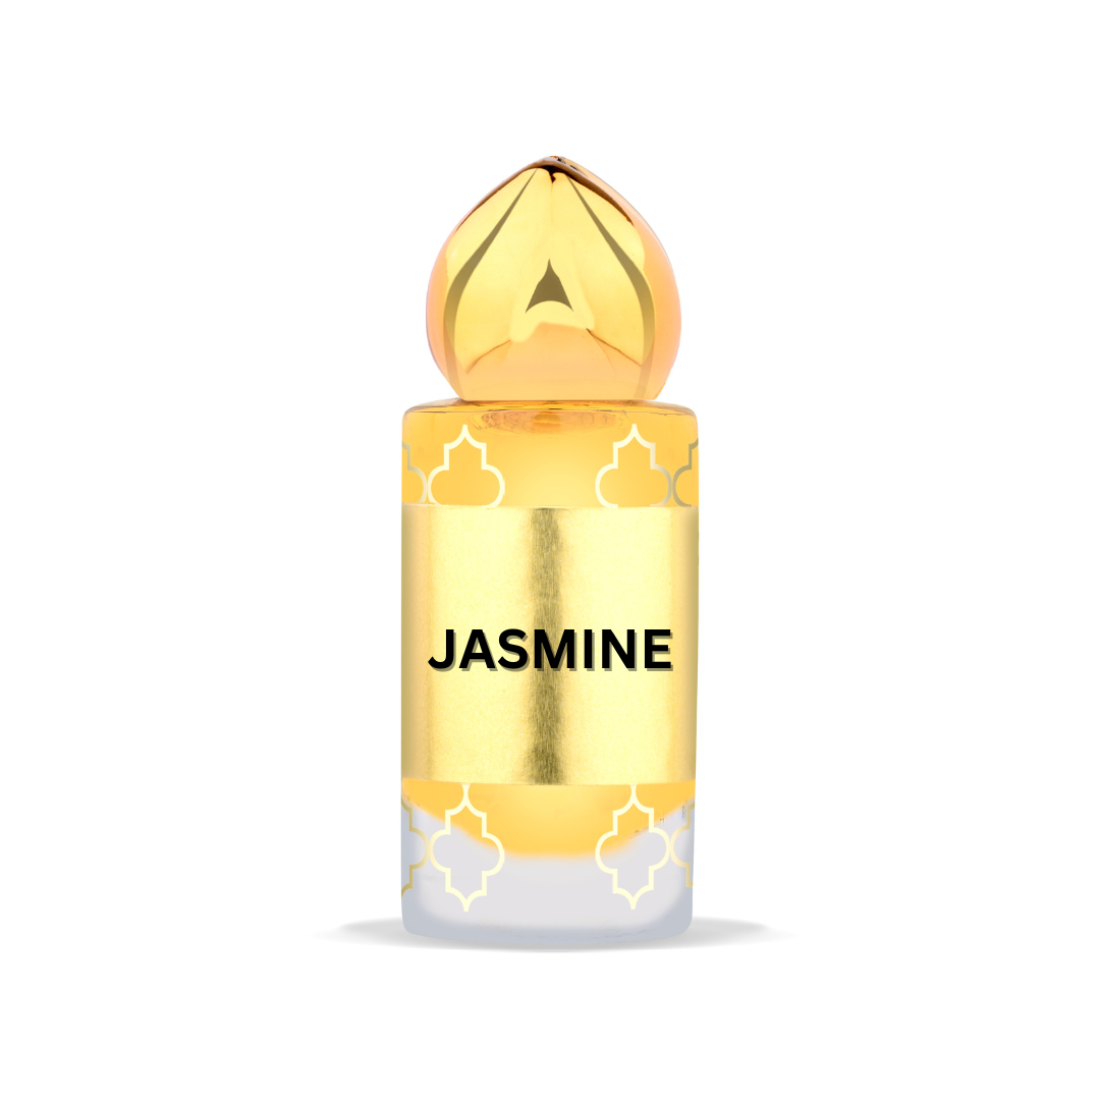 JASMINE Premium Attar